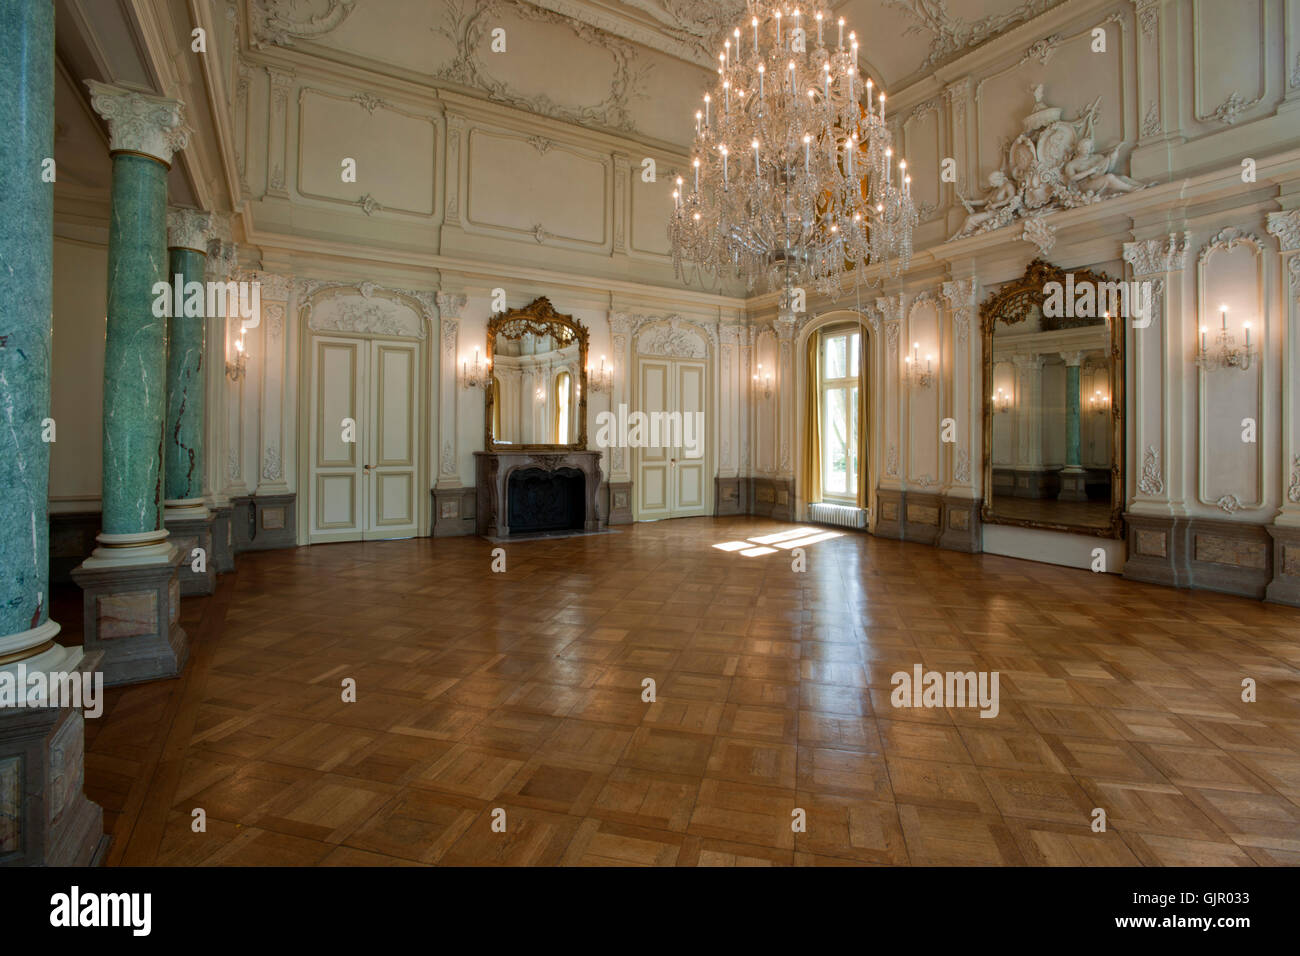 BRD, Deutschland, NRW, Leverkusen, Schloss Morsbroich, barocker Spiegelsaal  Stock Photo - Alamy